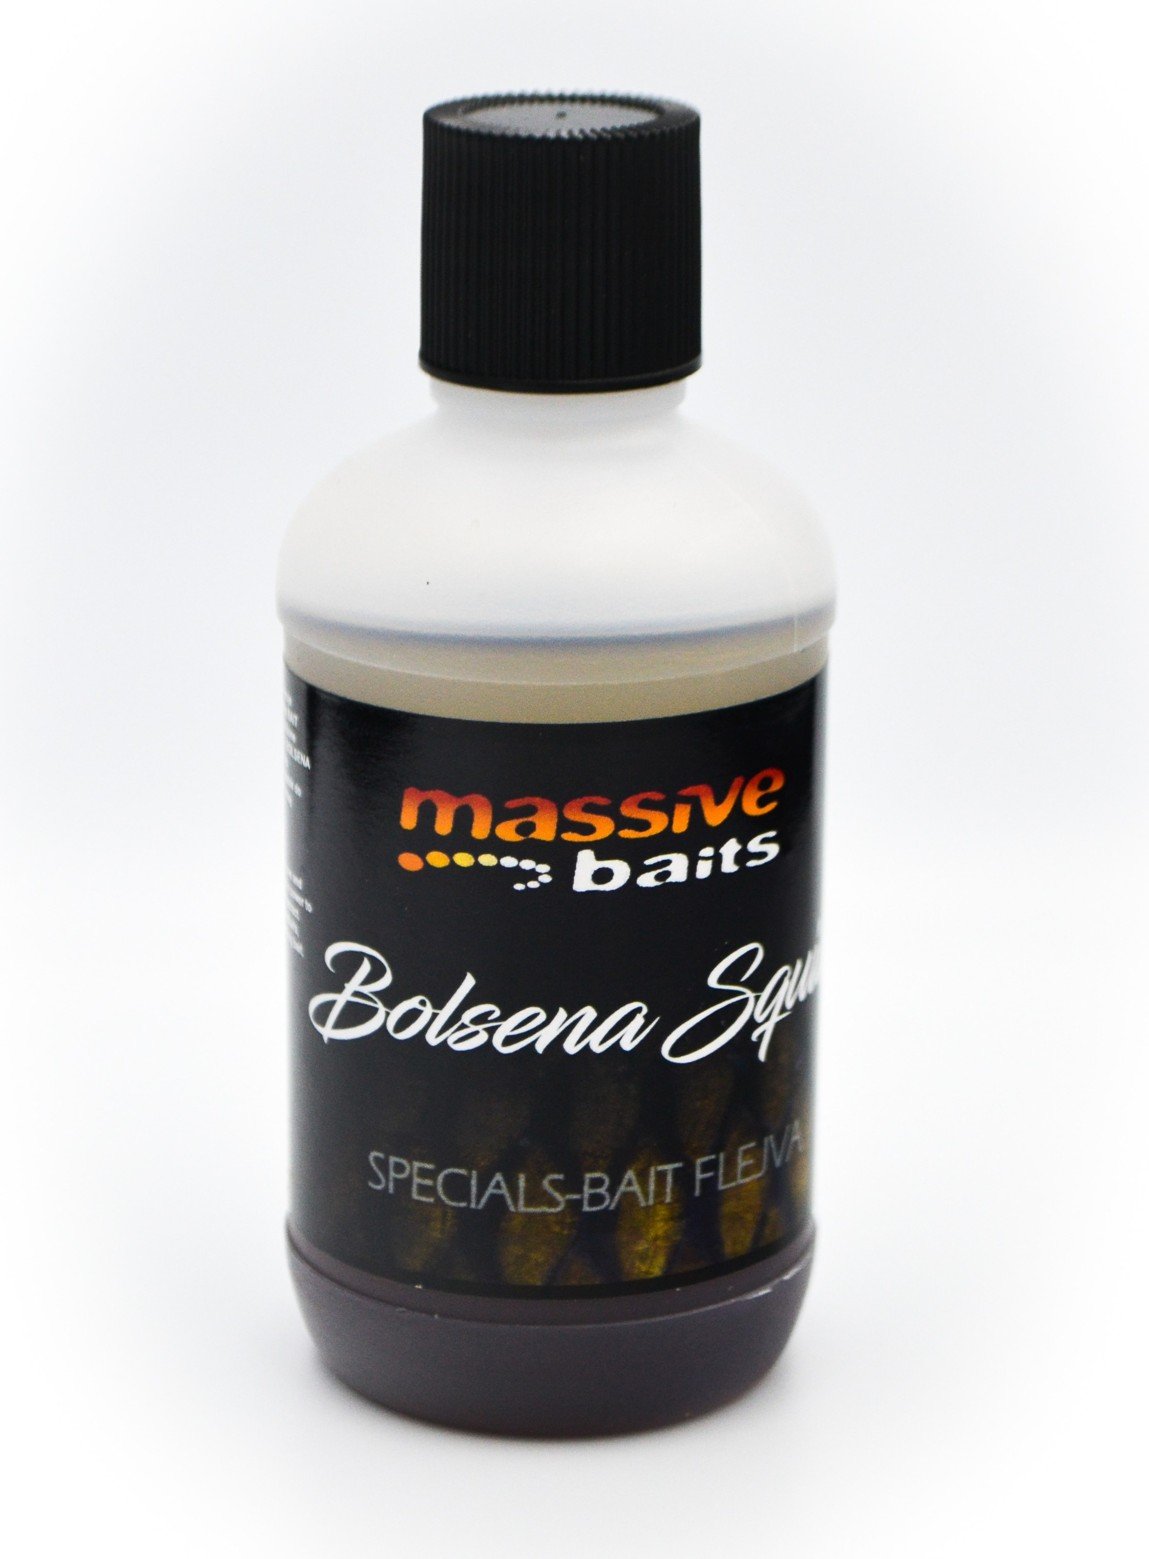 Massive Baits – Bolsena Squid – Bait Flejva / Flavour